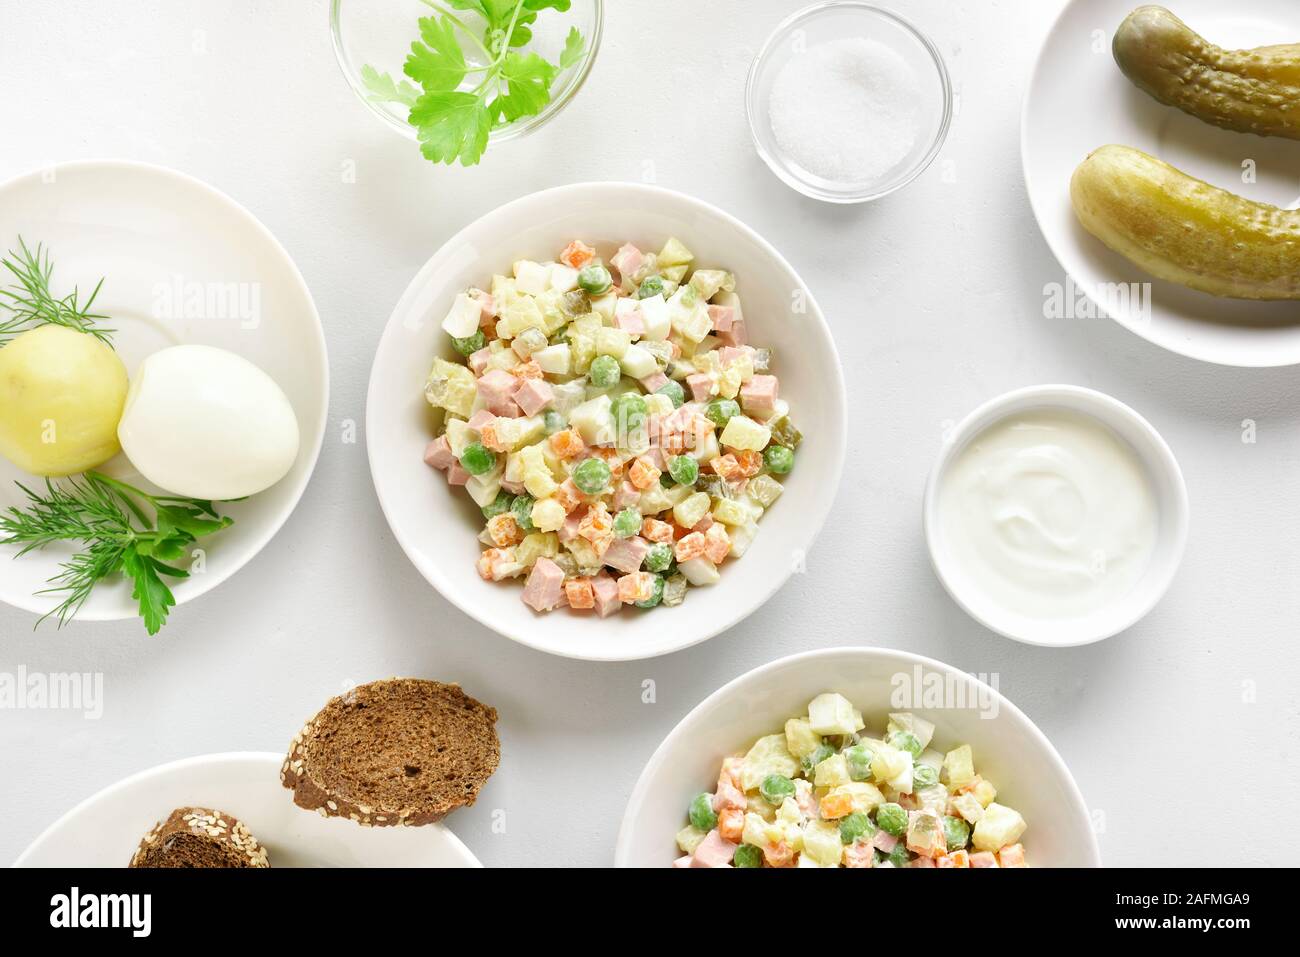 Olivier savoureux de salade de légumes bouillis et de la saucisse avec de la mayonnaise dans un bol. Nouvel An Russe ou salade de Noël sur fond noir en lumière. Haut de la vie Banque D'Images